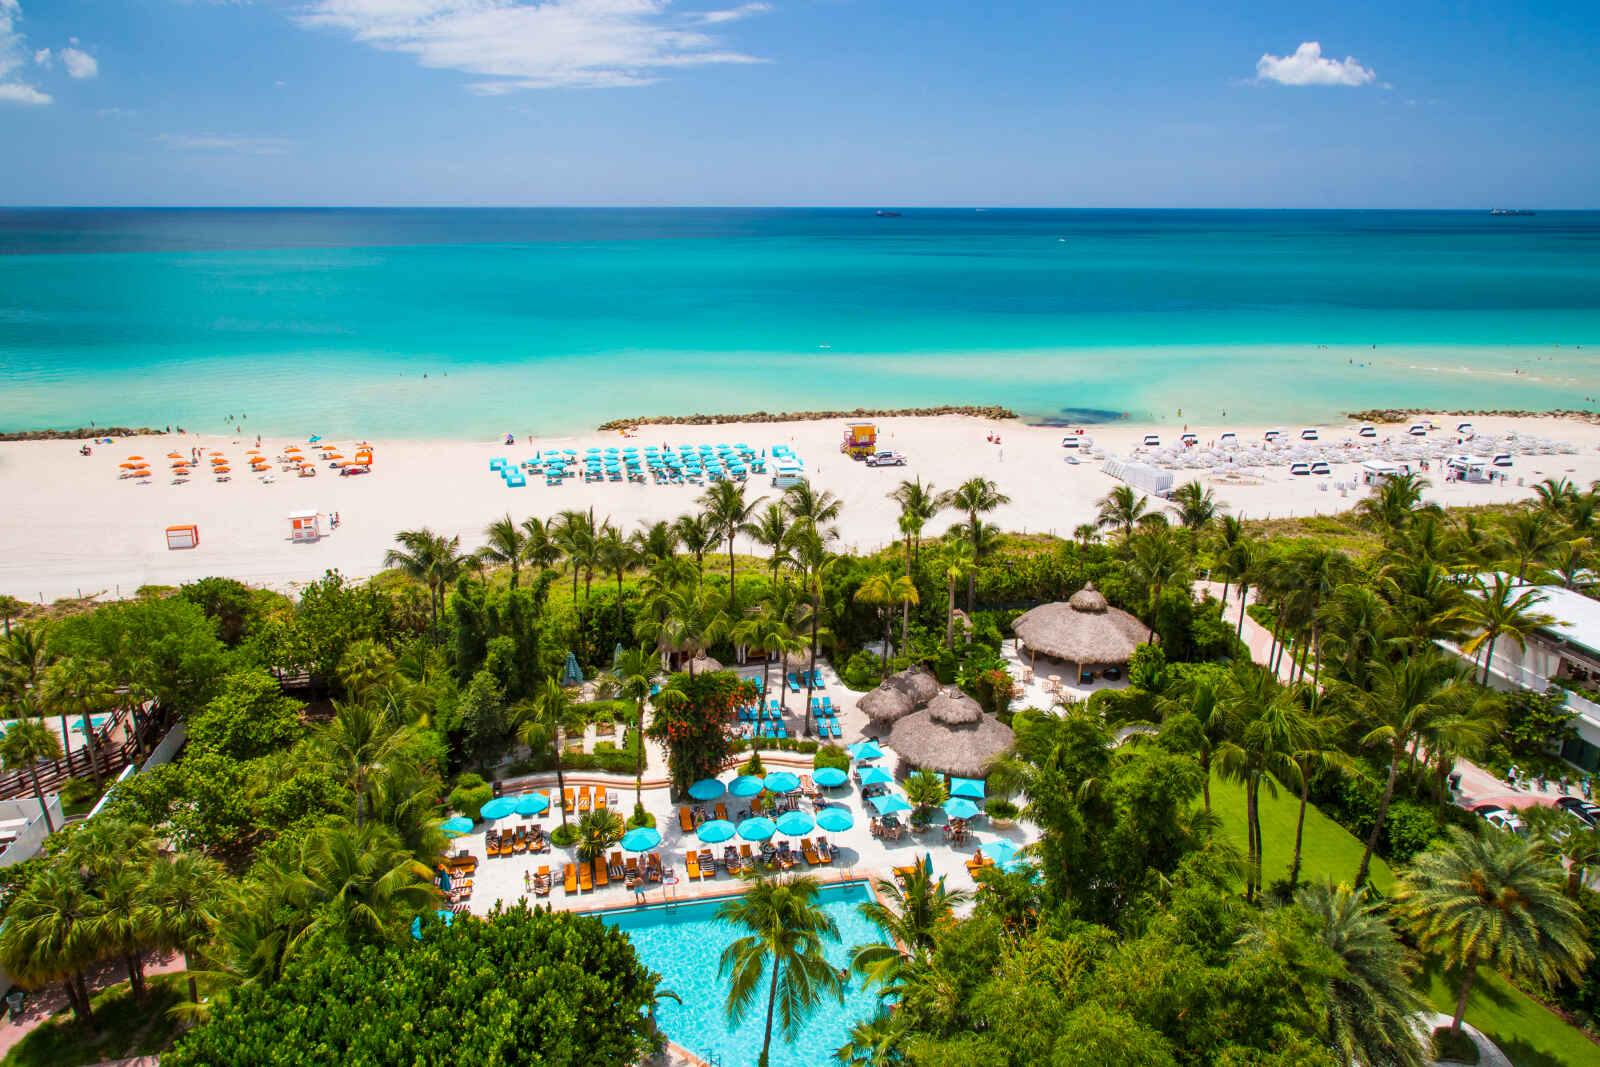 Etats-Unis - Sud des Etats-Unis - Floride - Miami - The Palms Hôtel & Spa